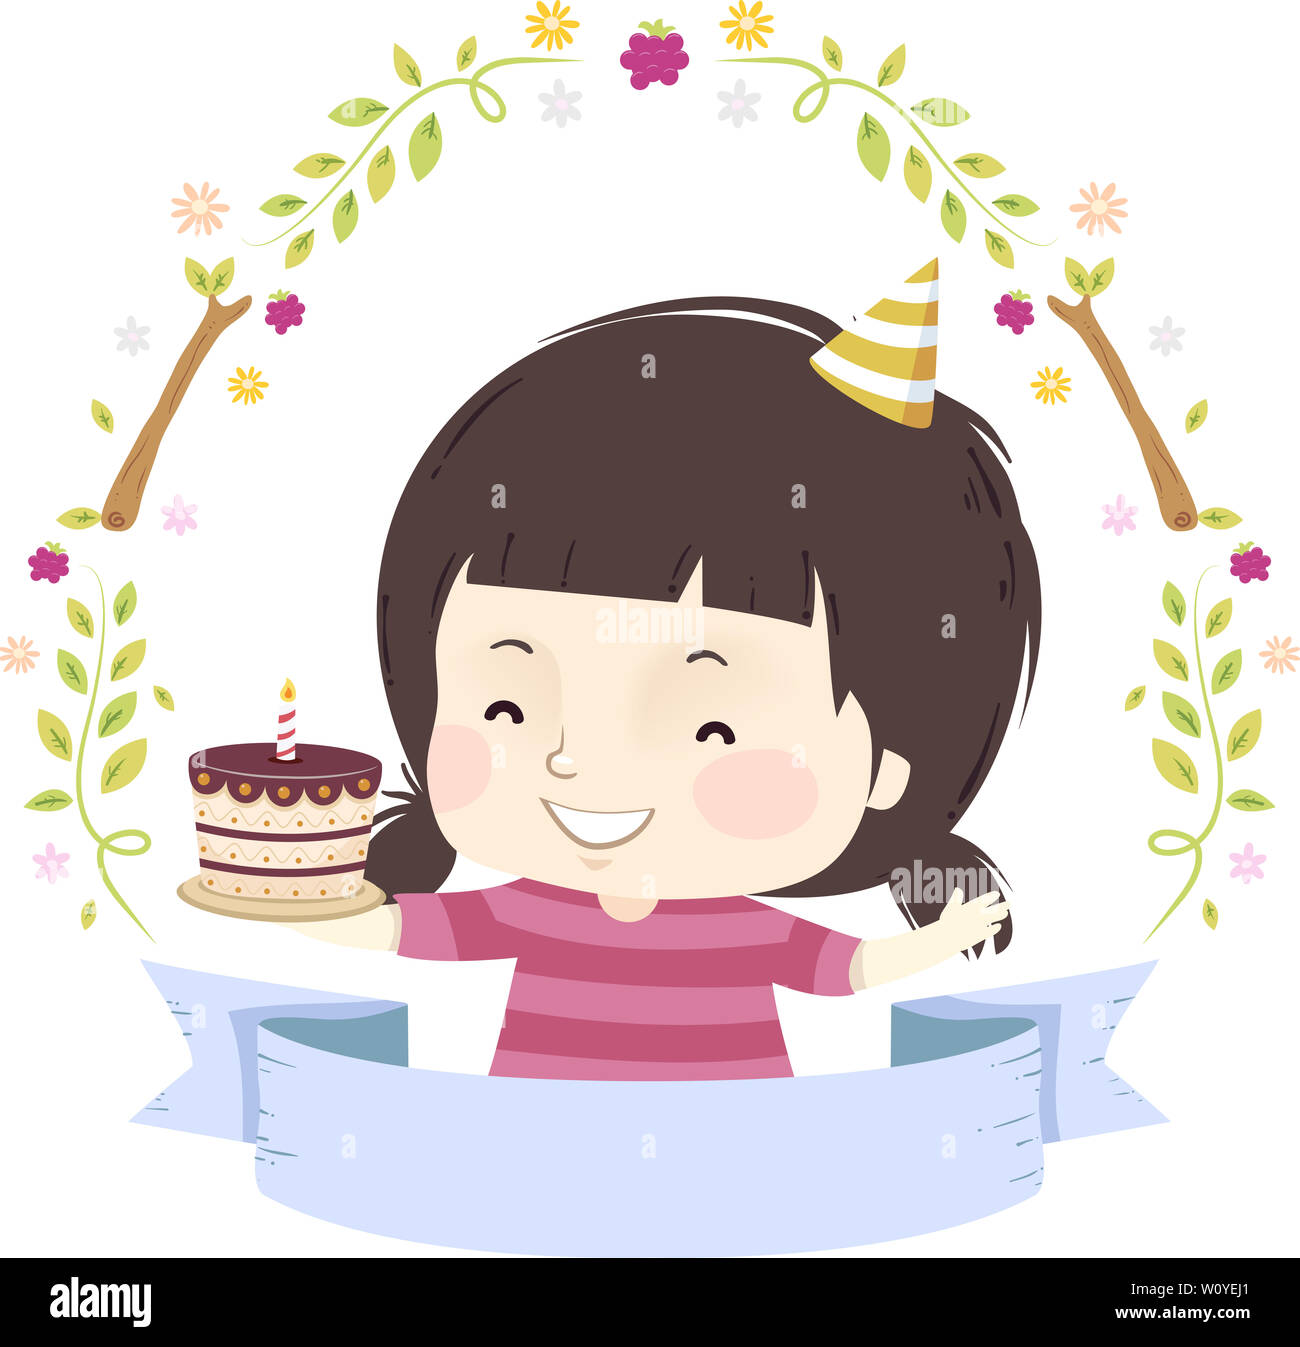 Abbildung: ein Kind Mädchen mit Geburtstagstorte, Farbband und Wald Elemente Stockfoto